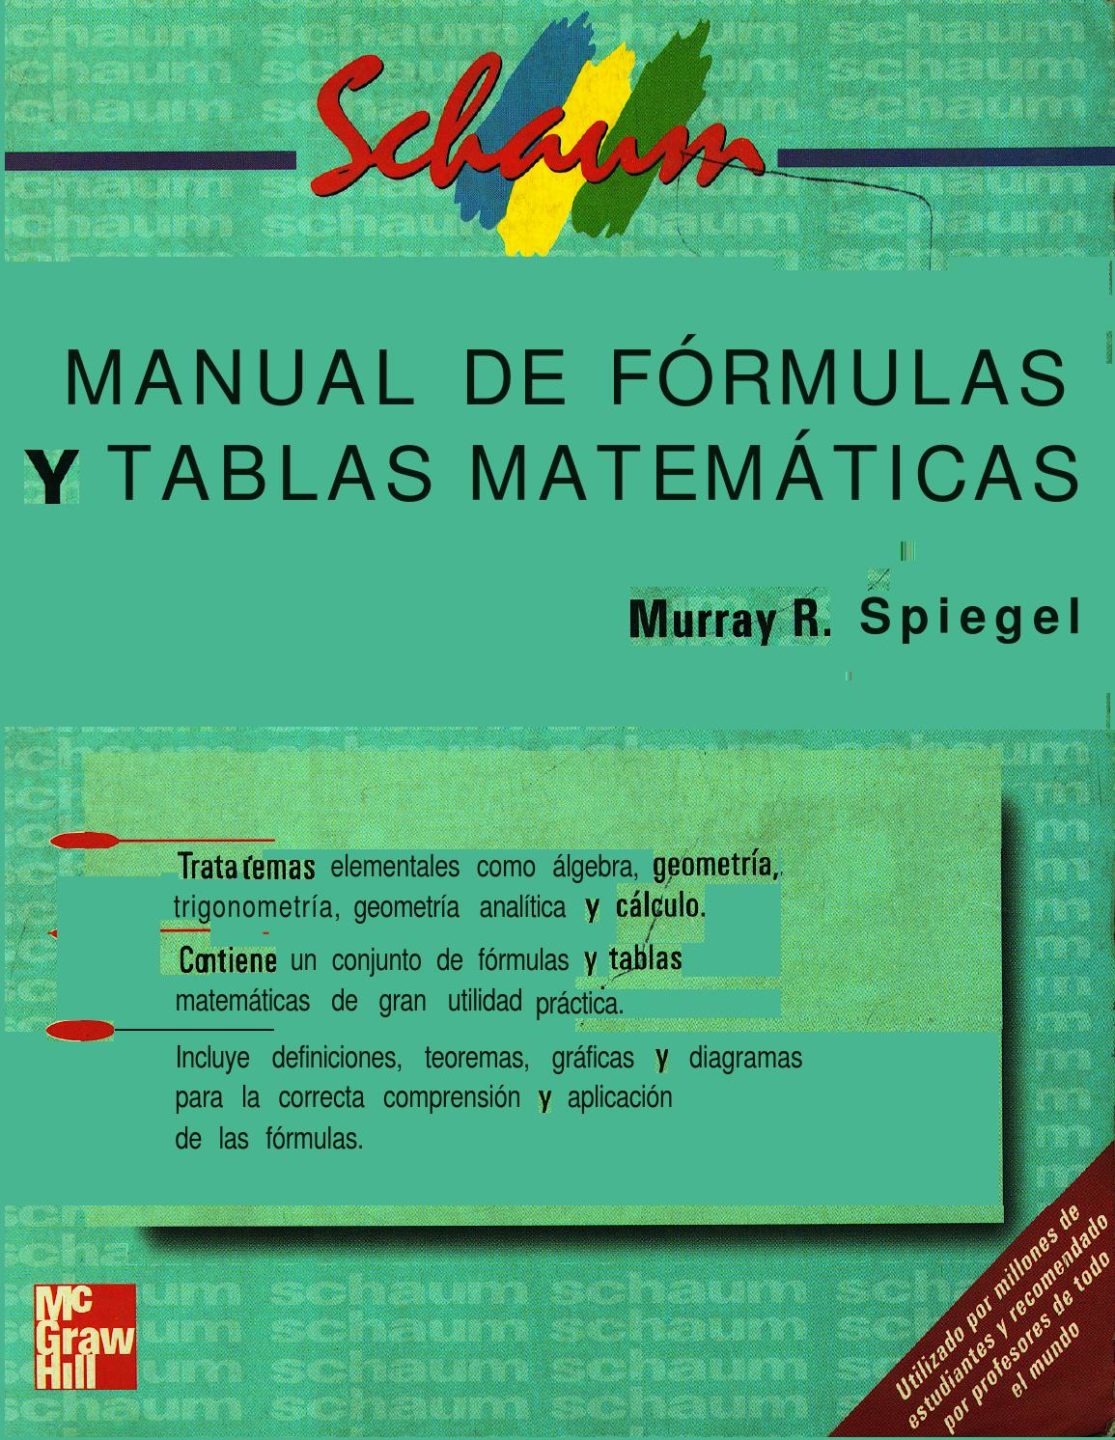 Manual de Fórmulas y Tablas Matemáticas (Schaum) 1 Edición Murray R. Spiegel PDF